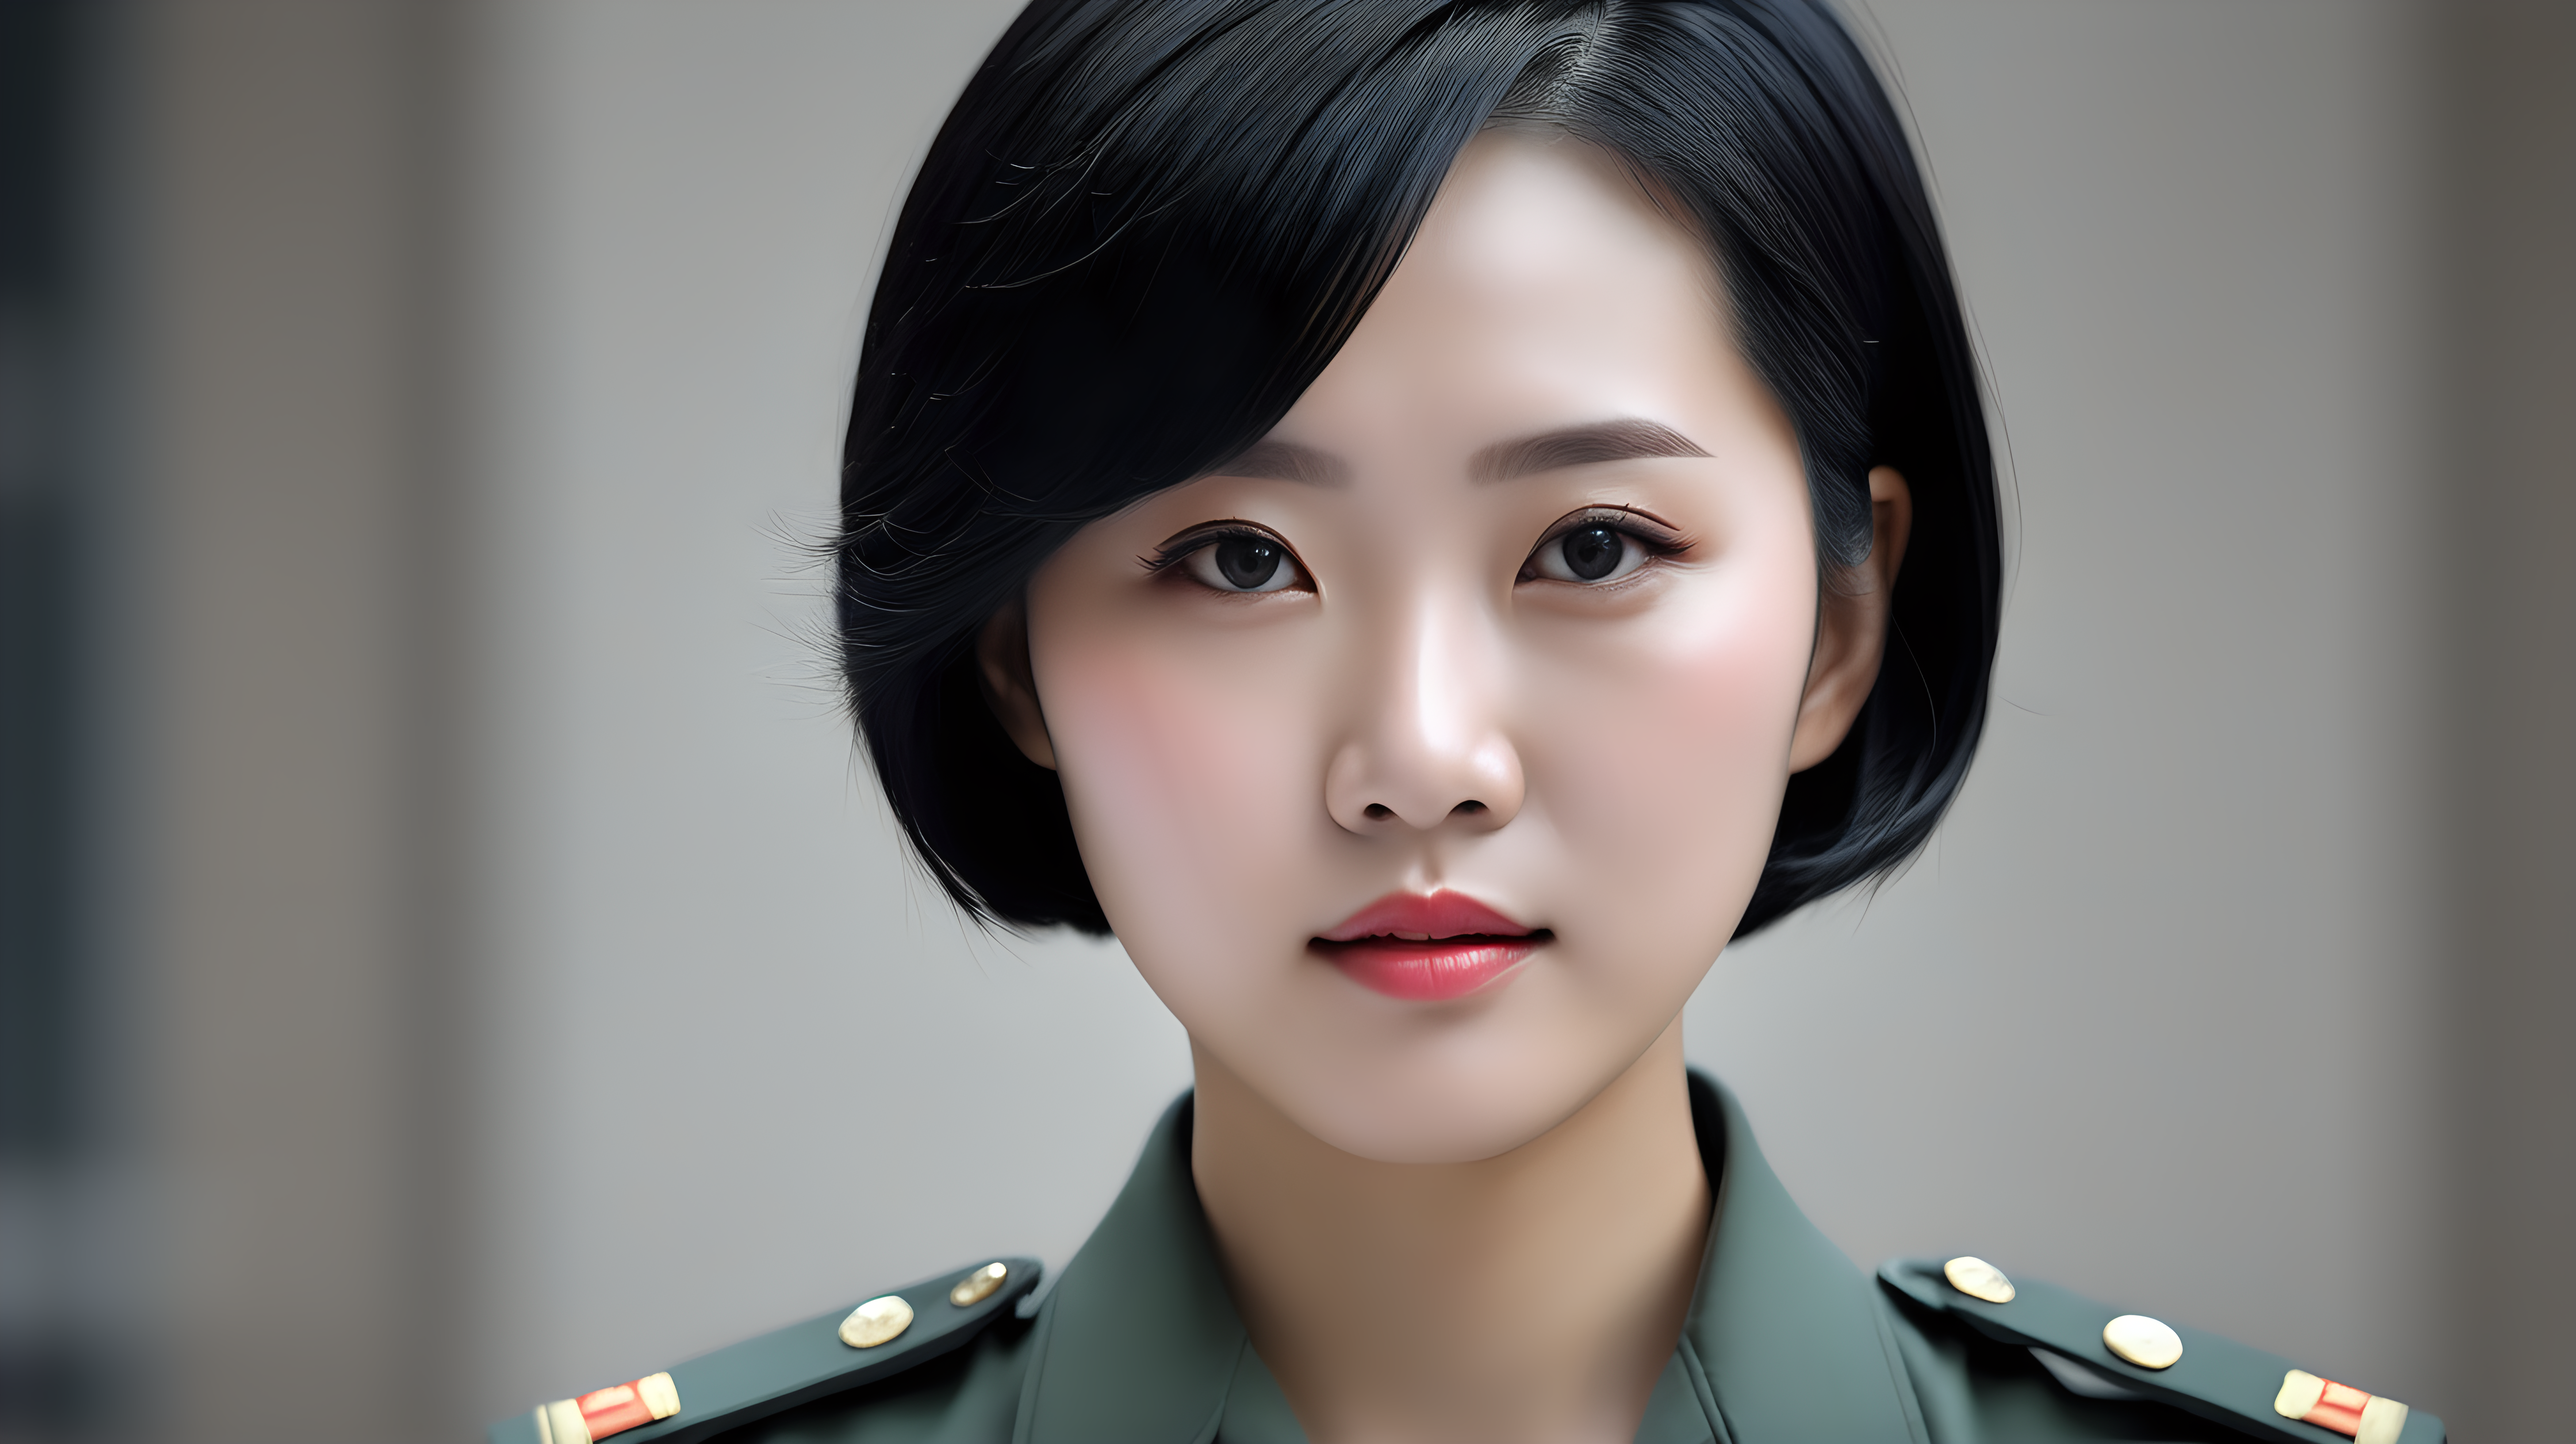 一名中国人民解放军女兵
黑发
短发
主持新闻
正脸